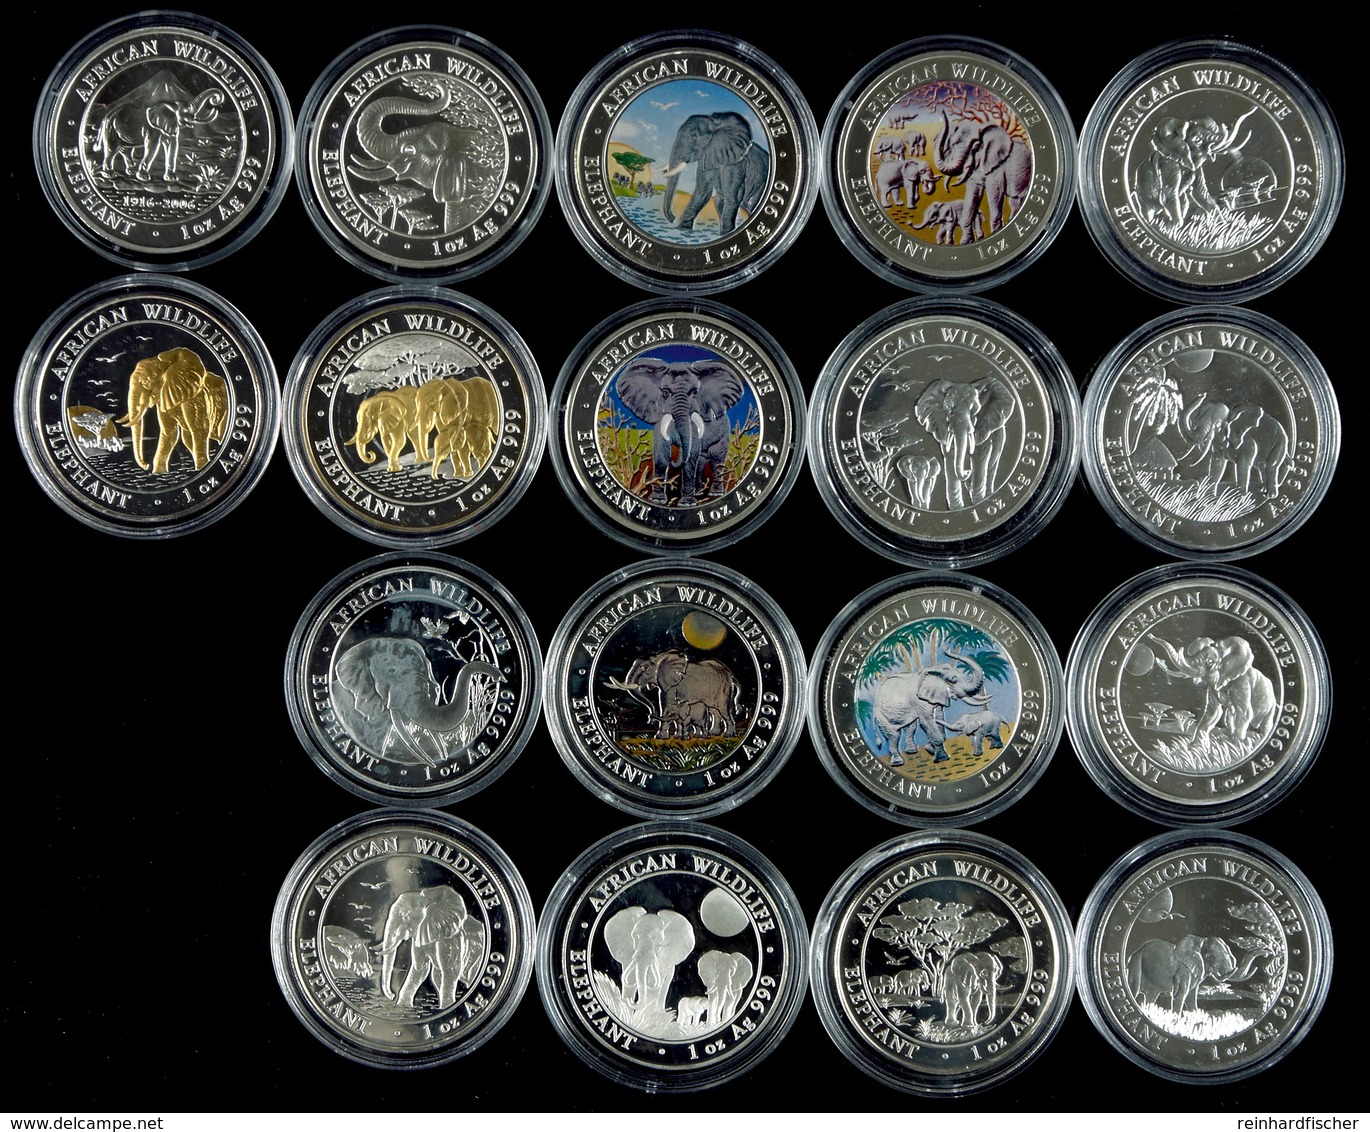 18x 100 Shillings Silber, 2004-2019, African Wildlife Elefant, 1 Oz, Jahrgang 2010 3x Vorhanden Als Farbdruck, Motivteil - Somalia